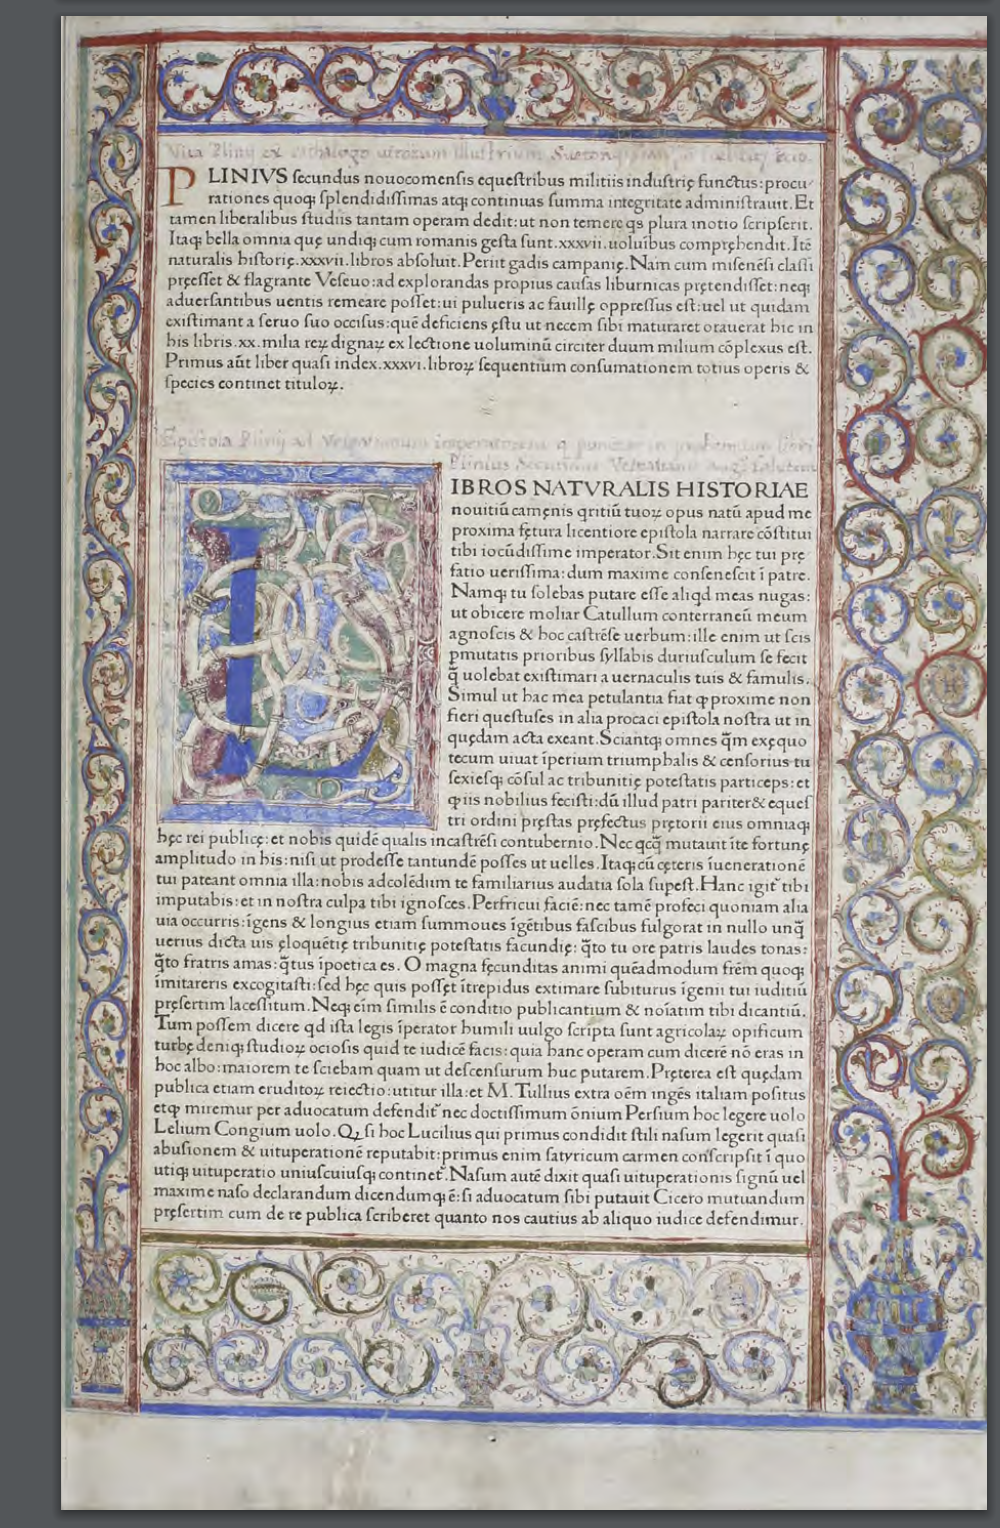 Historia naturalis, 1469